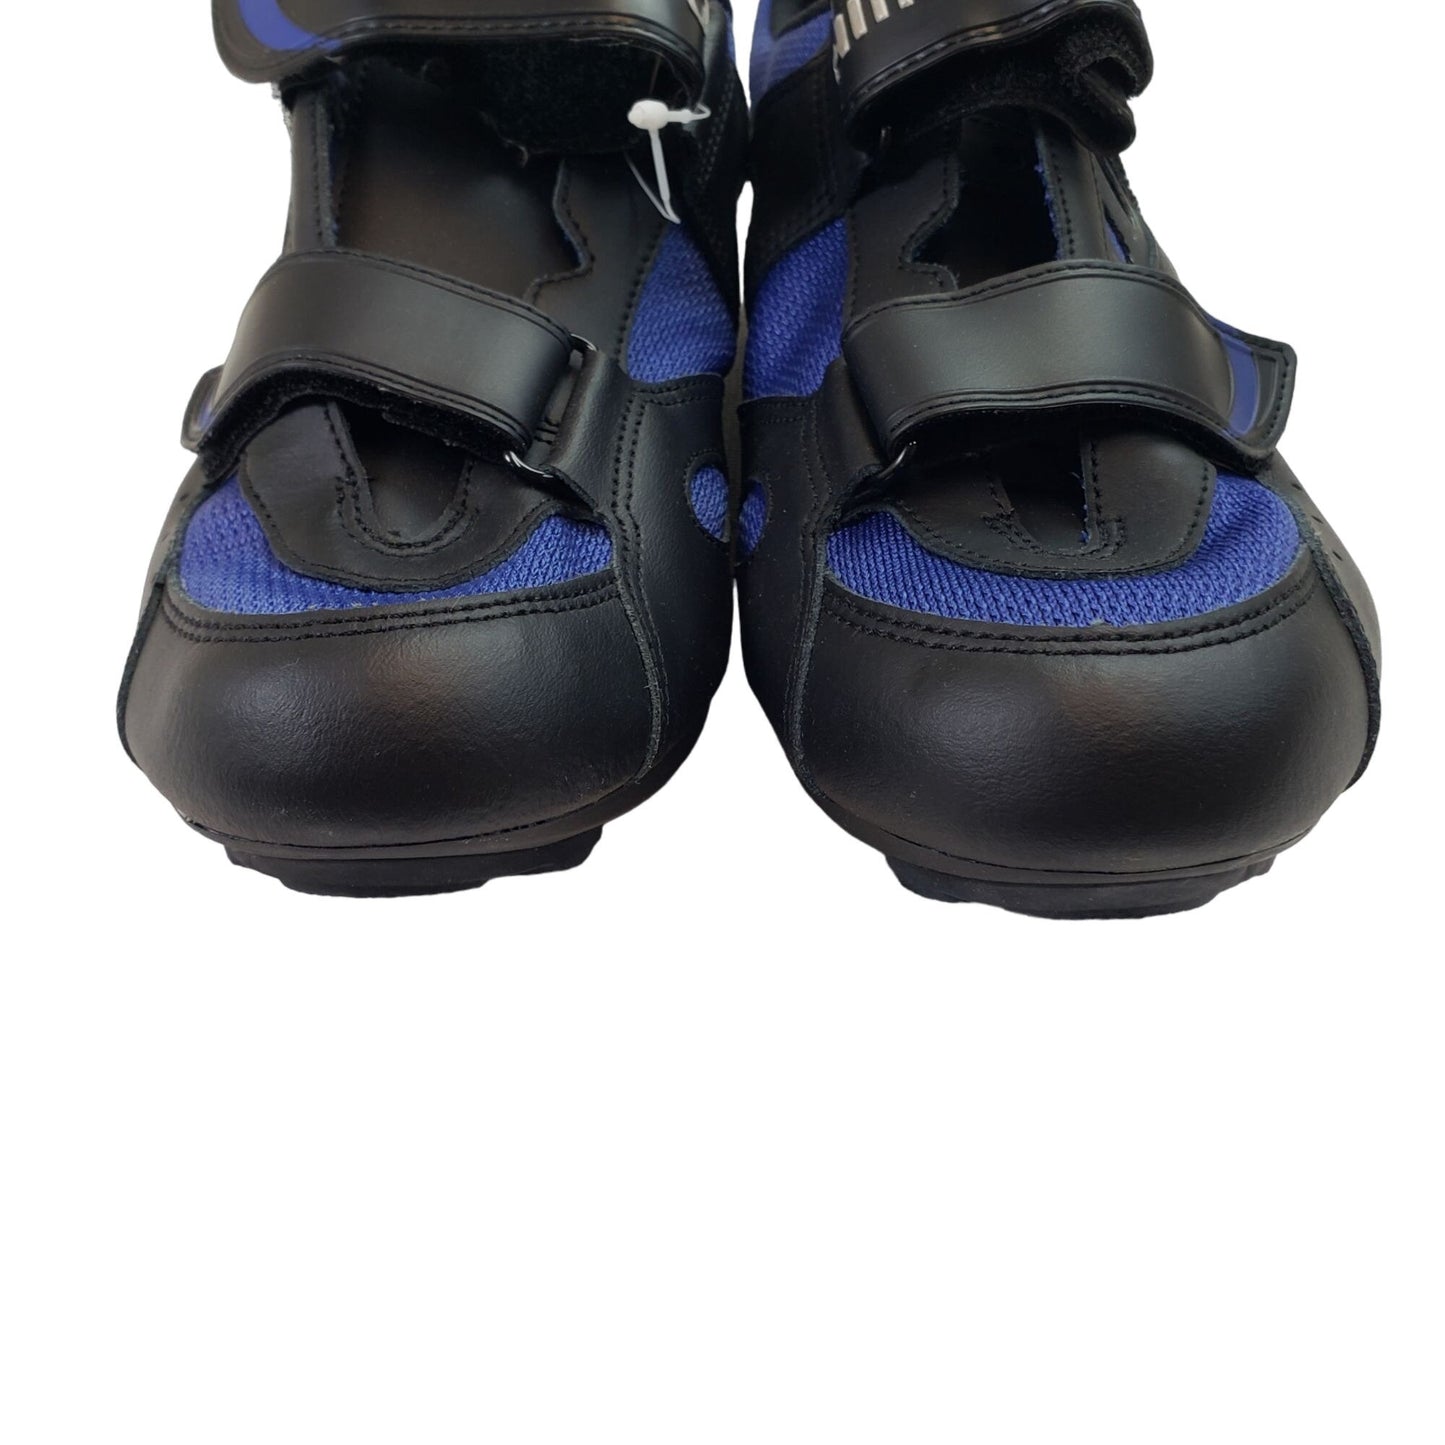 NIB/NWT Shimano SH-R096B Road Cycling Shoes Black/Blue Size 47/12.5 US